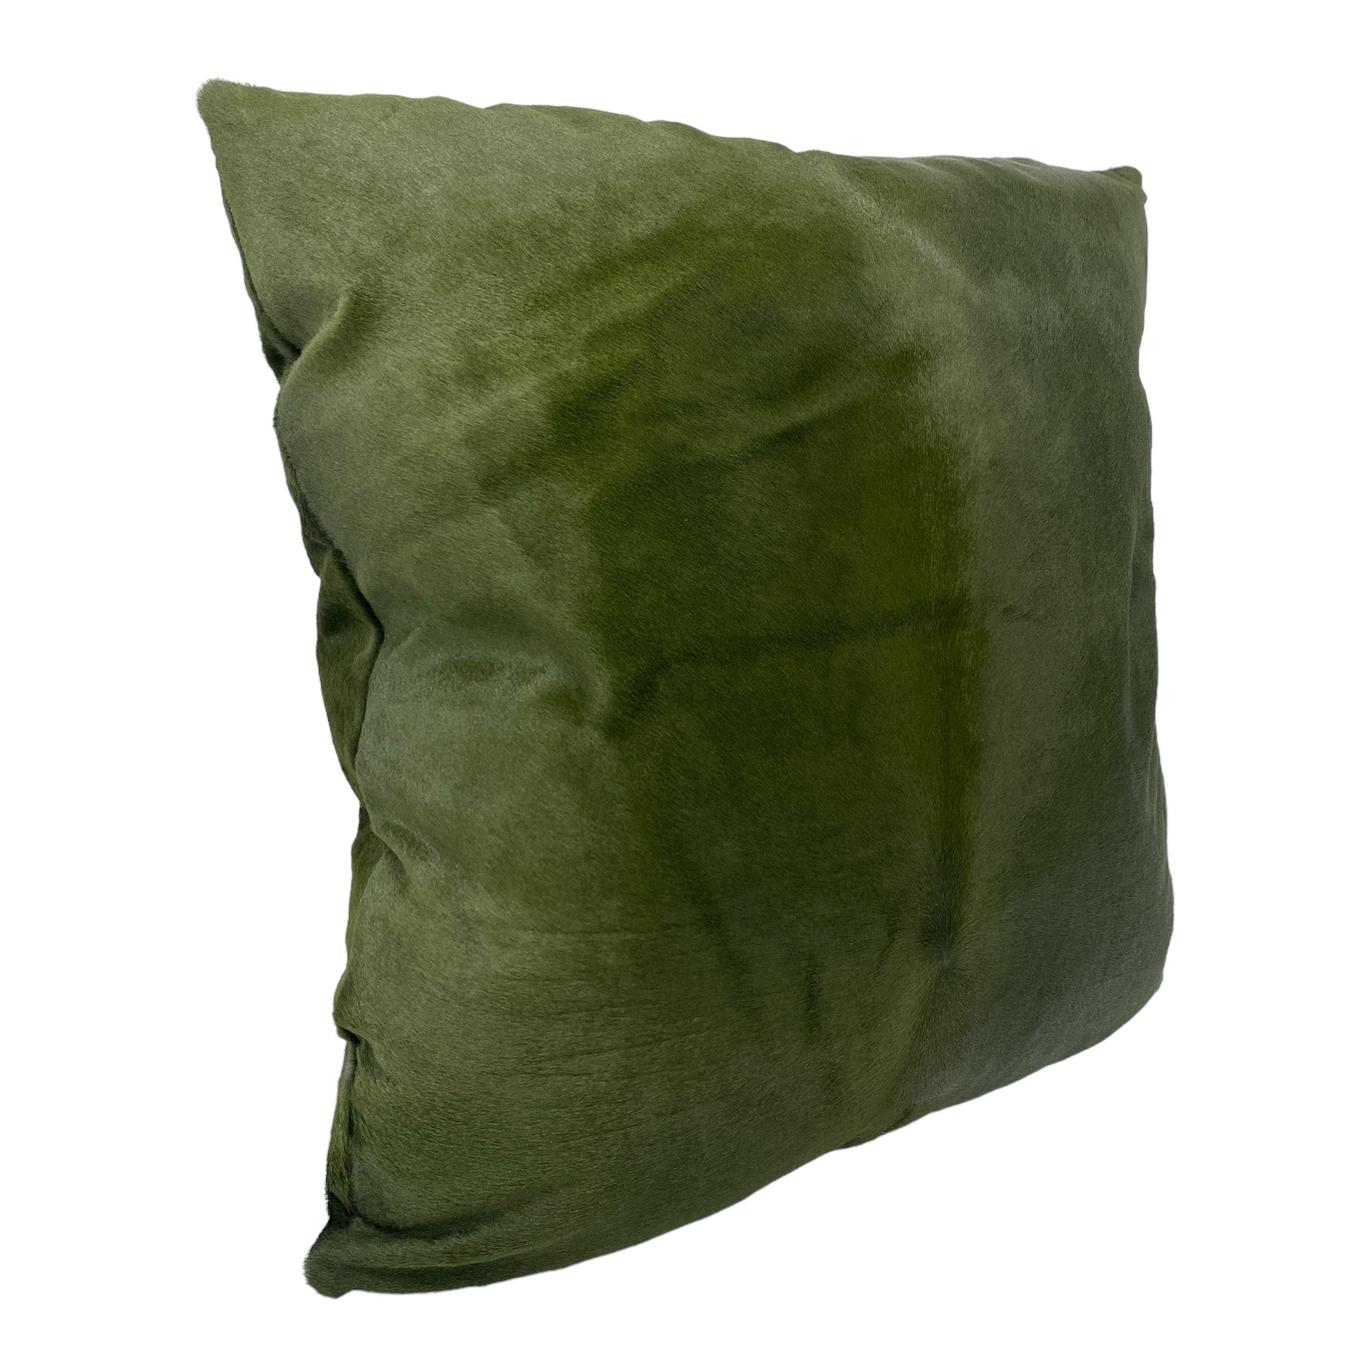 Coussin en cuir vert
Voici notre luxueux oreiller vert qui présente une touche d'opulence avec des accents de fourrure en cuir vert. Les deux faces présentent une somptueuse texture de daim à poils courts, garantissant une expérience somptueuse et